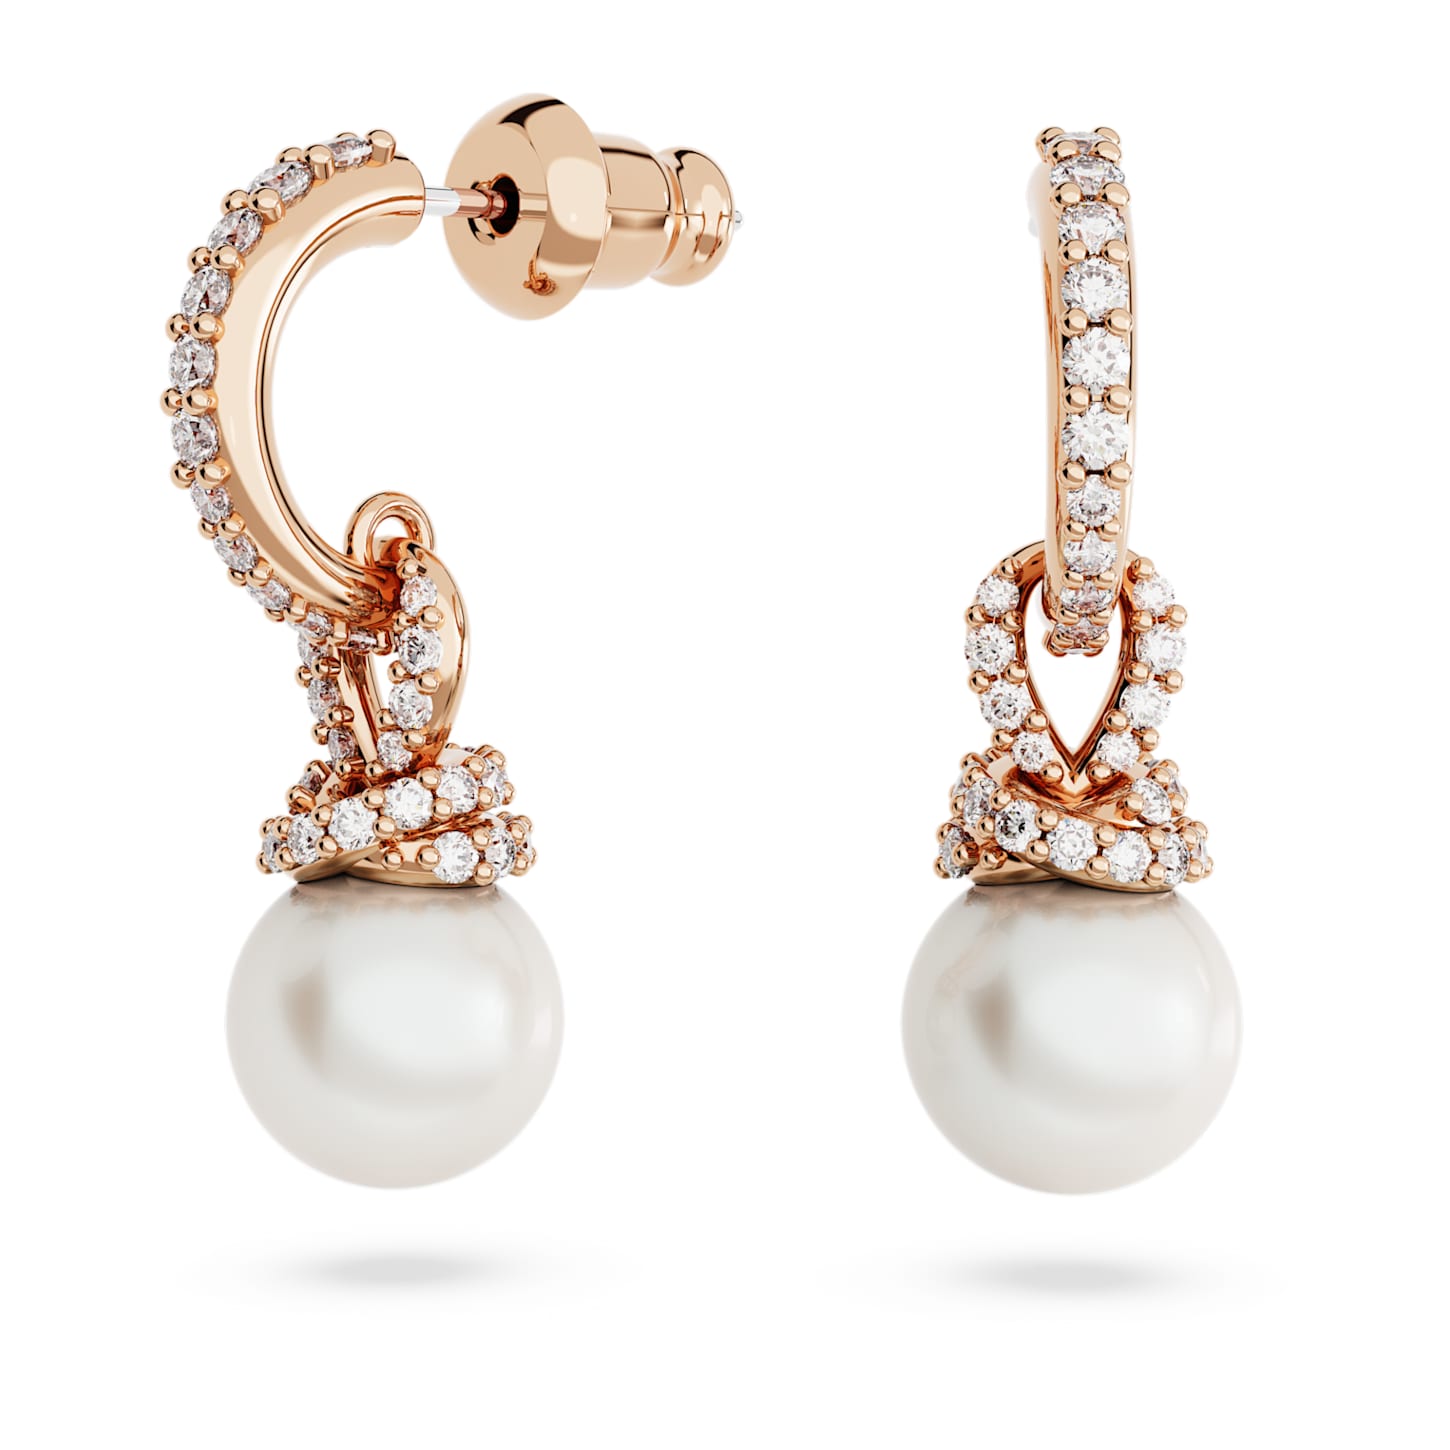 Originally - White Rose Gold - Earrings - Swarovski